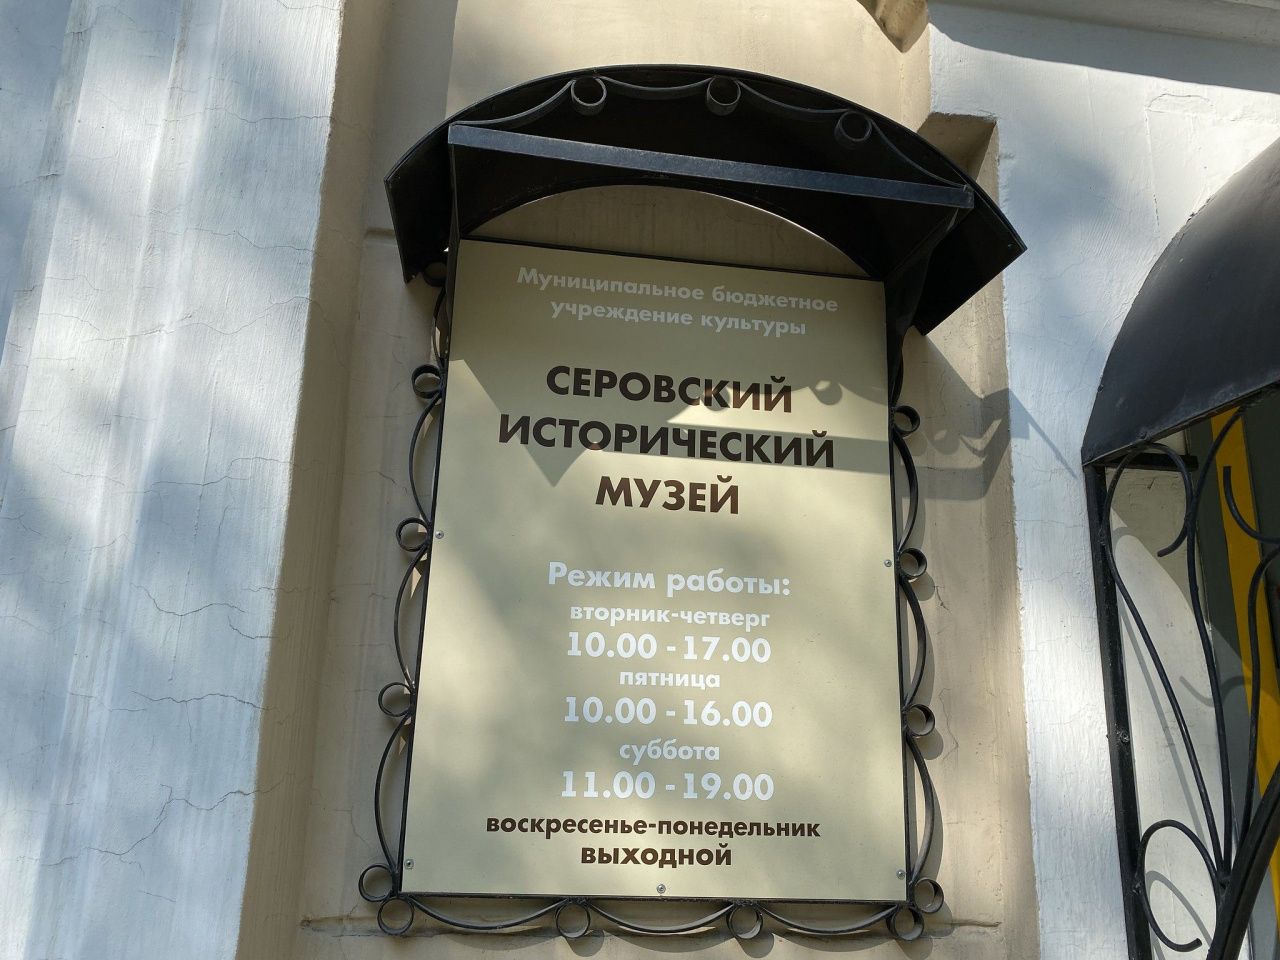 В майские праздники Серовский исторический музей проведет Дни открытых дверей